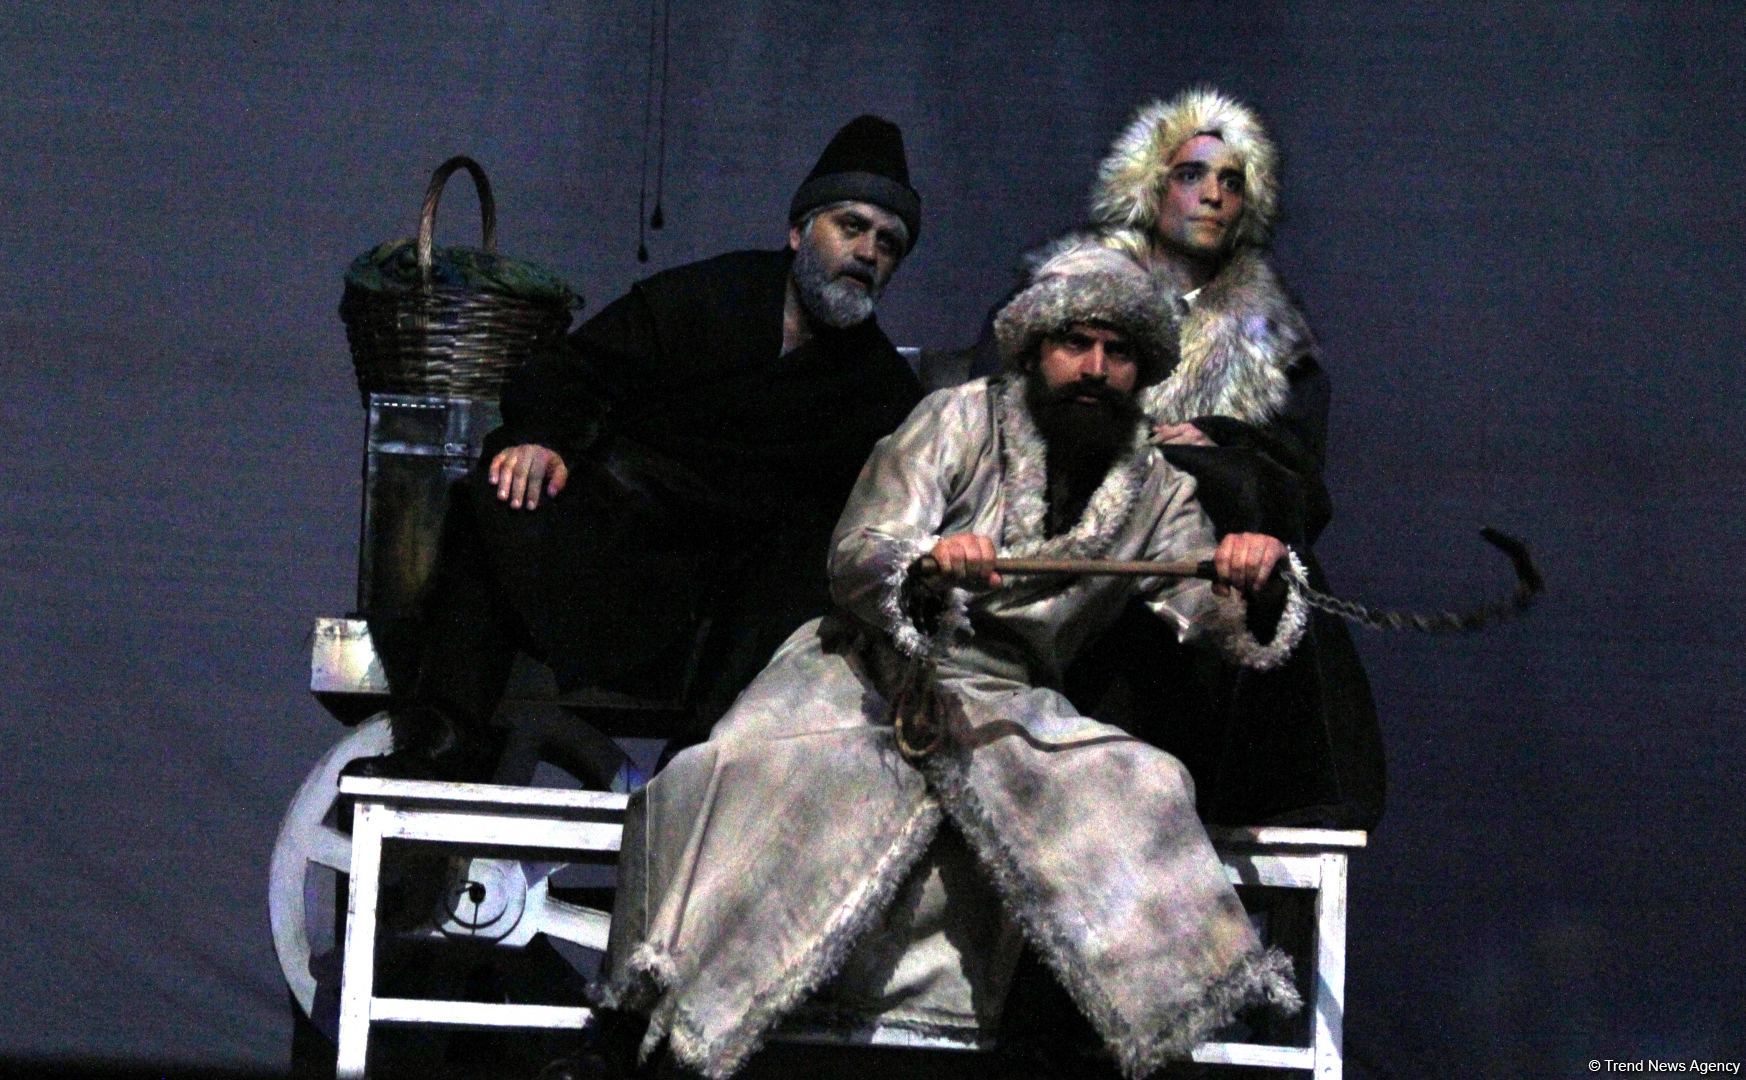 В Баку состоялась премьера спектакля "Капитанская дочка" – восстание, любовь, измена… (ФОТО)